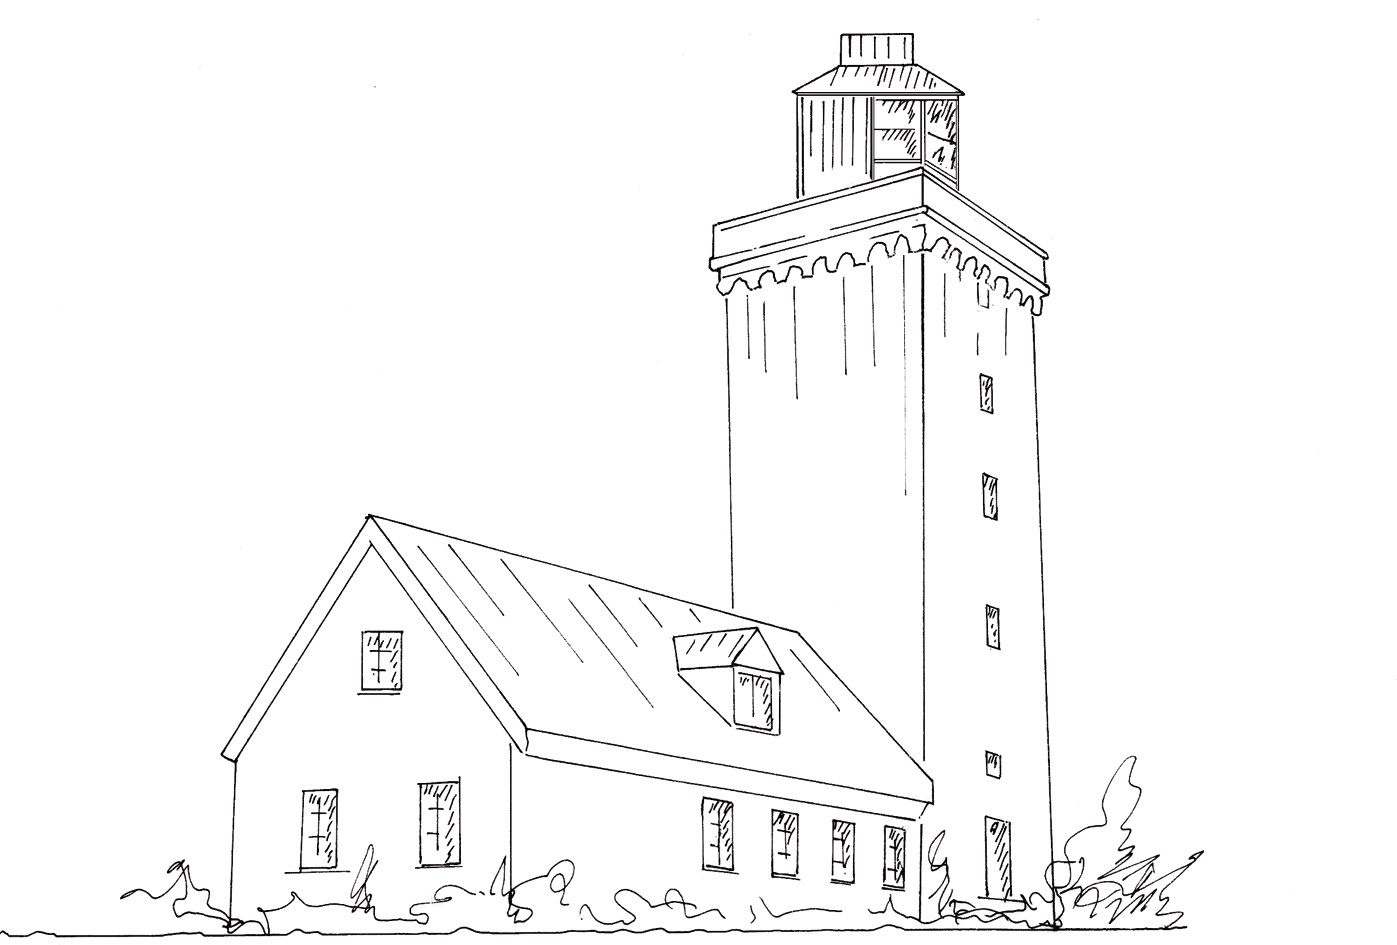 Nakkehoved - Lighthouse near Gilleleje